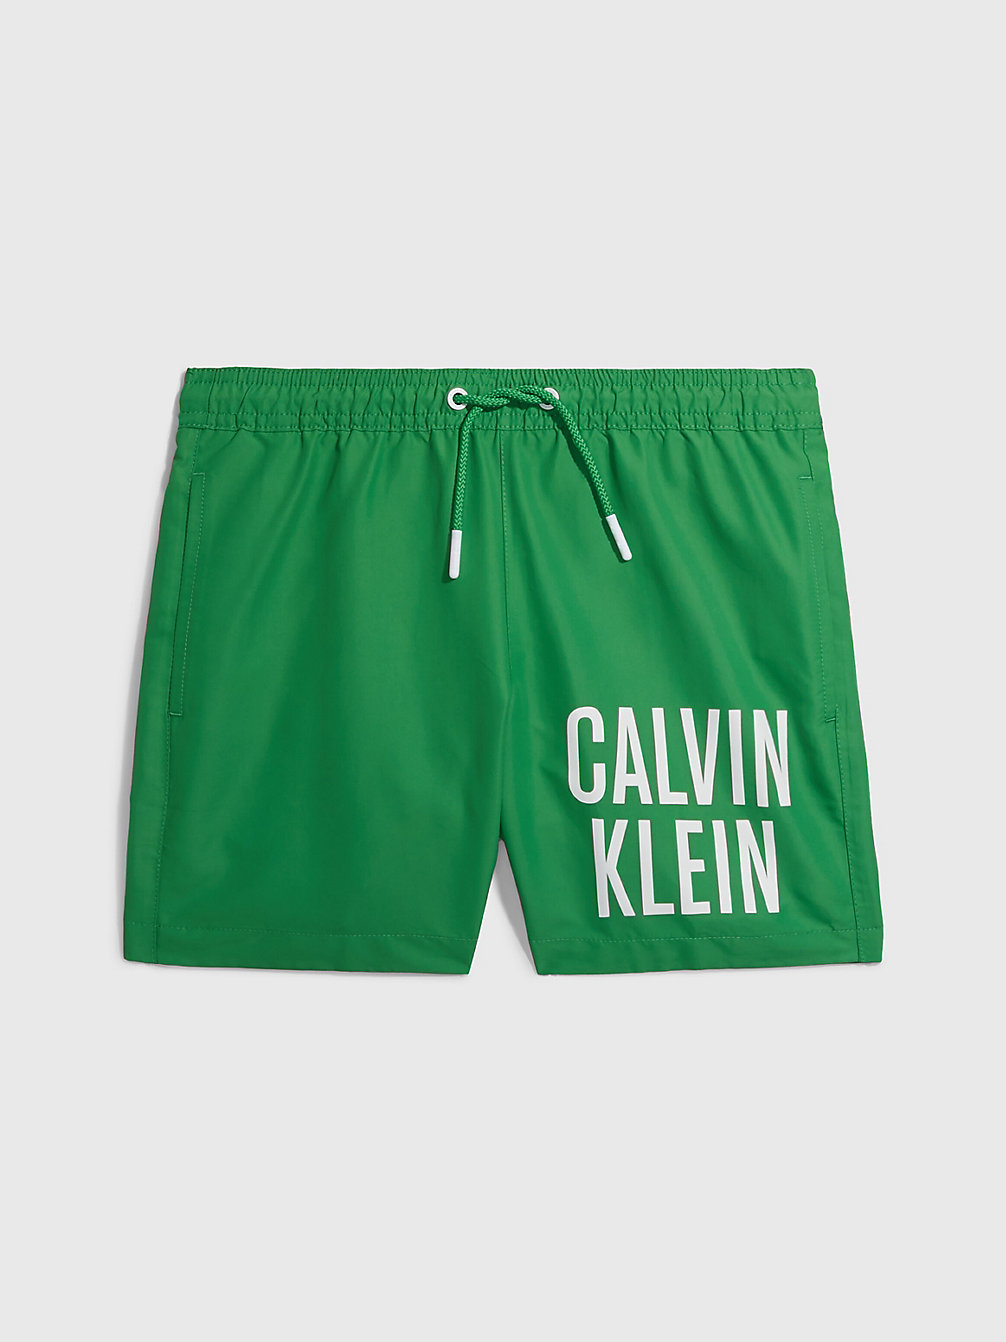 GREEN APPLE > Jongenszwemshort - Intense Power > undefined jongens - Calvin Klein